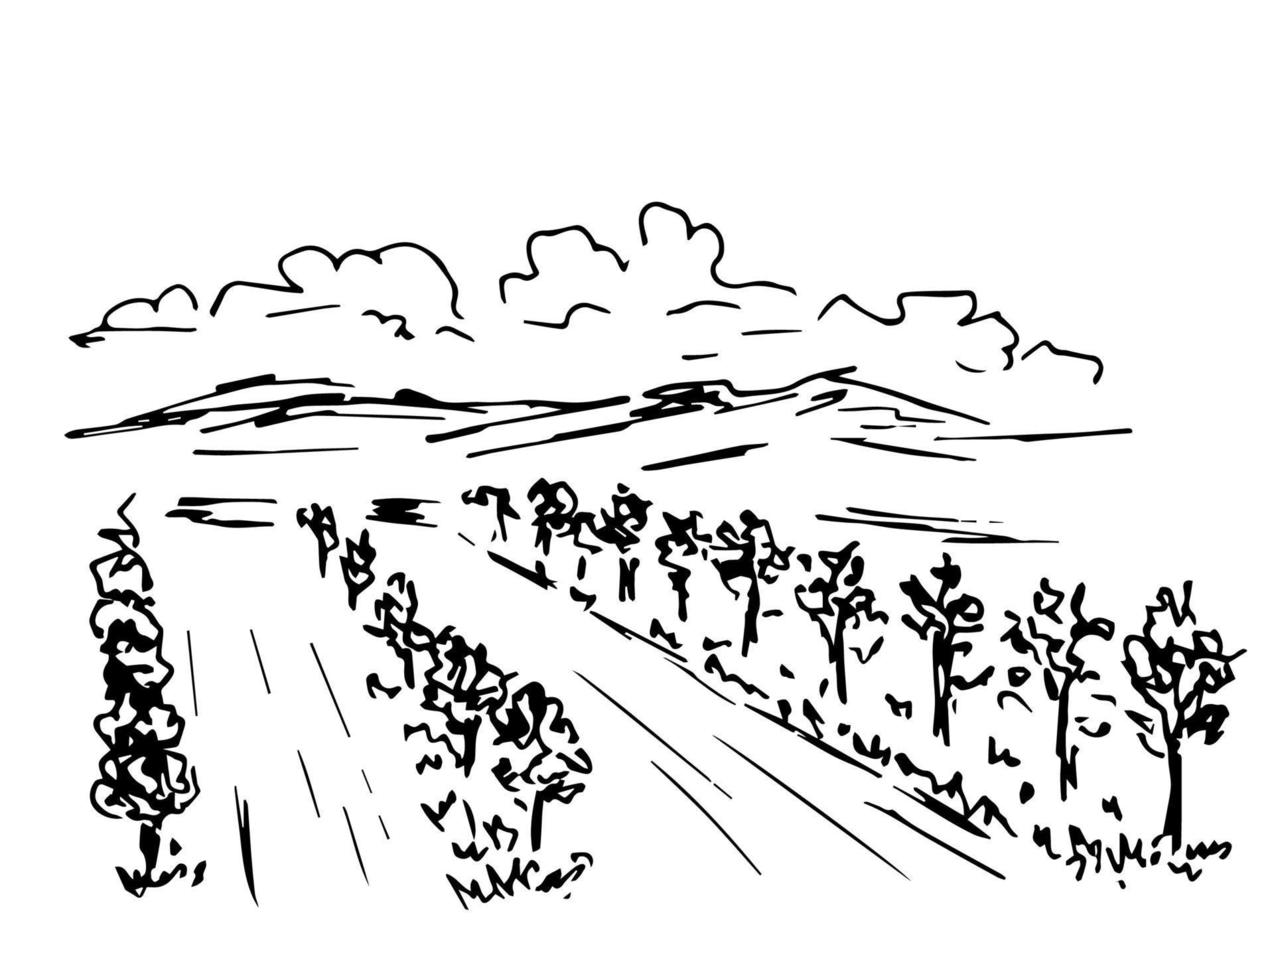 handgetekende eenvoudige inkt vector tekening. landschap, tuin fruitbomen, groeiende planten. wijngaard, rijen struiken, bergen aan de horizon, wolken. natuur, landbouw, landbouw. organische producten.